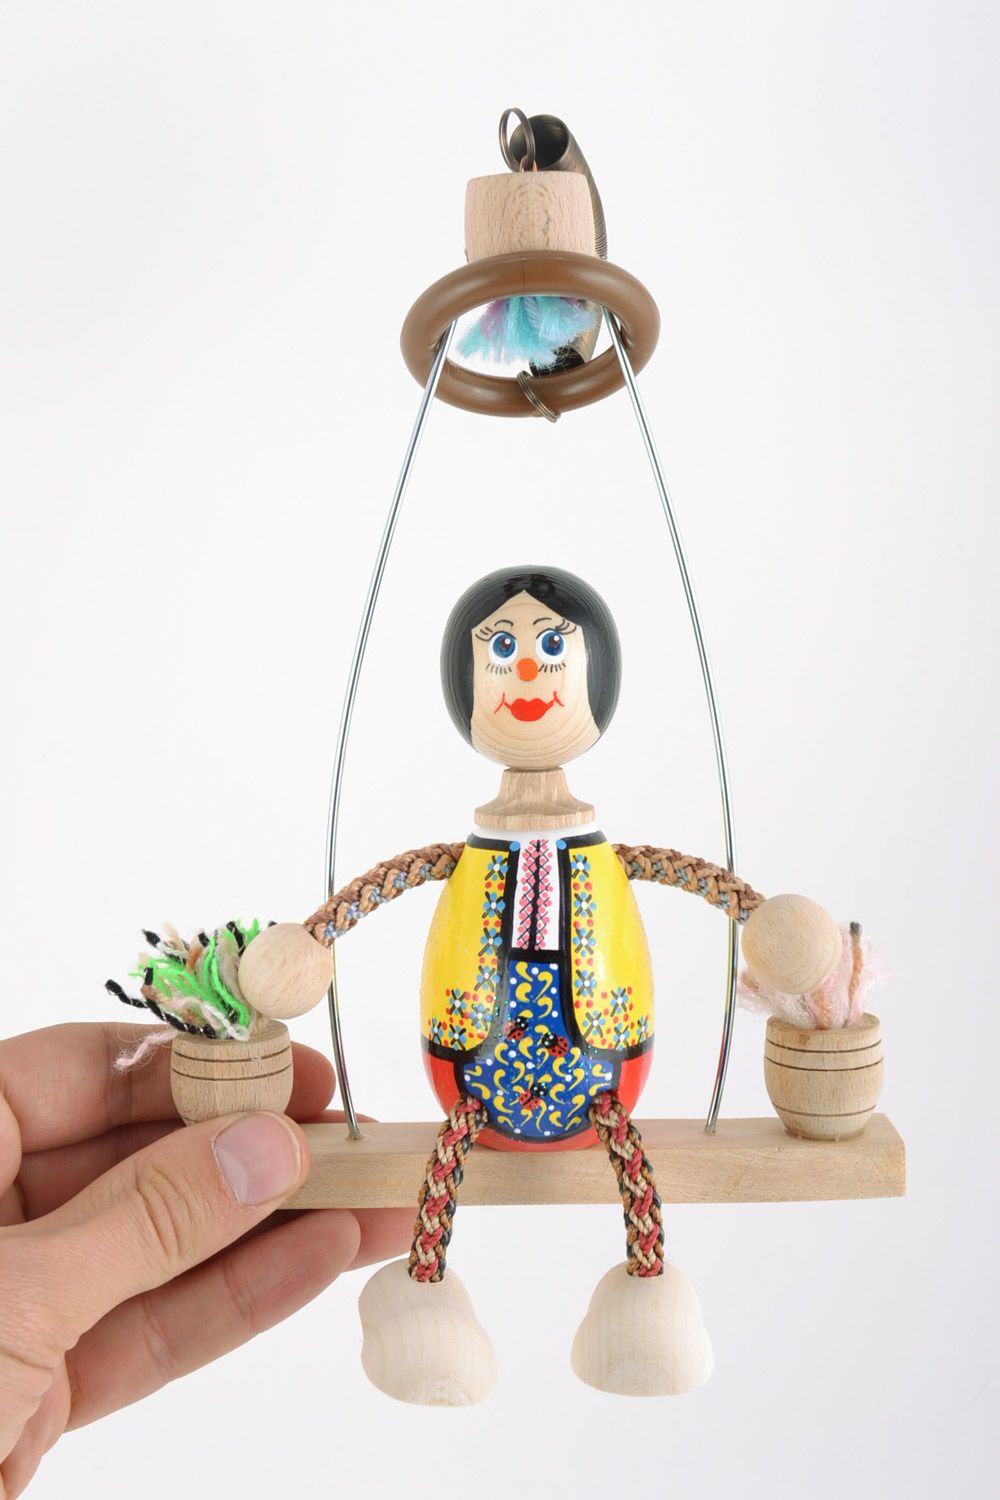 Оригинальная экологически чистая деревянная кукла на лавочке Девочка хэнд мэйд фото 2